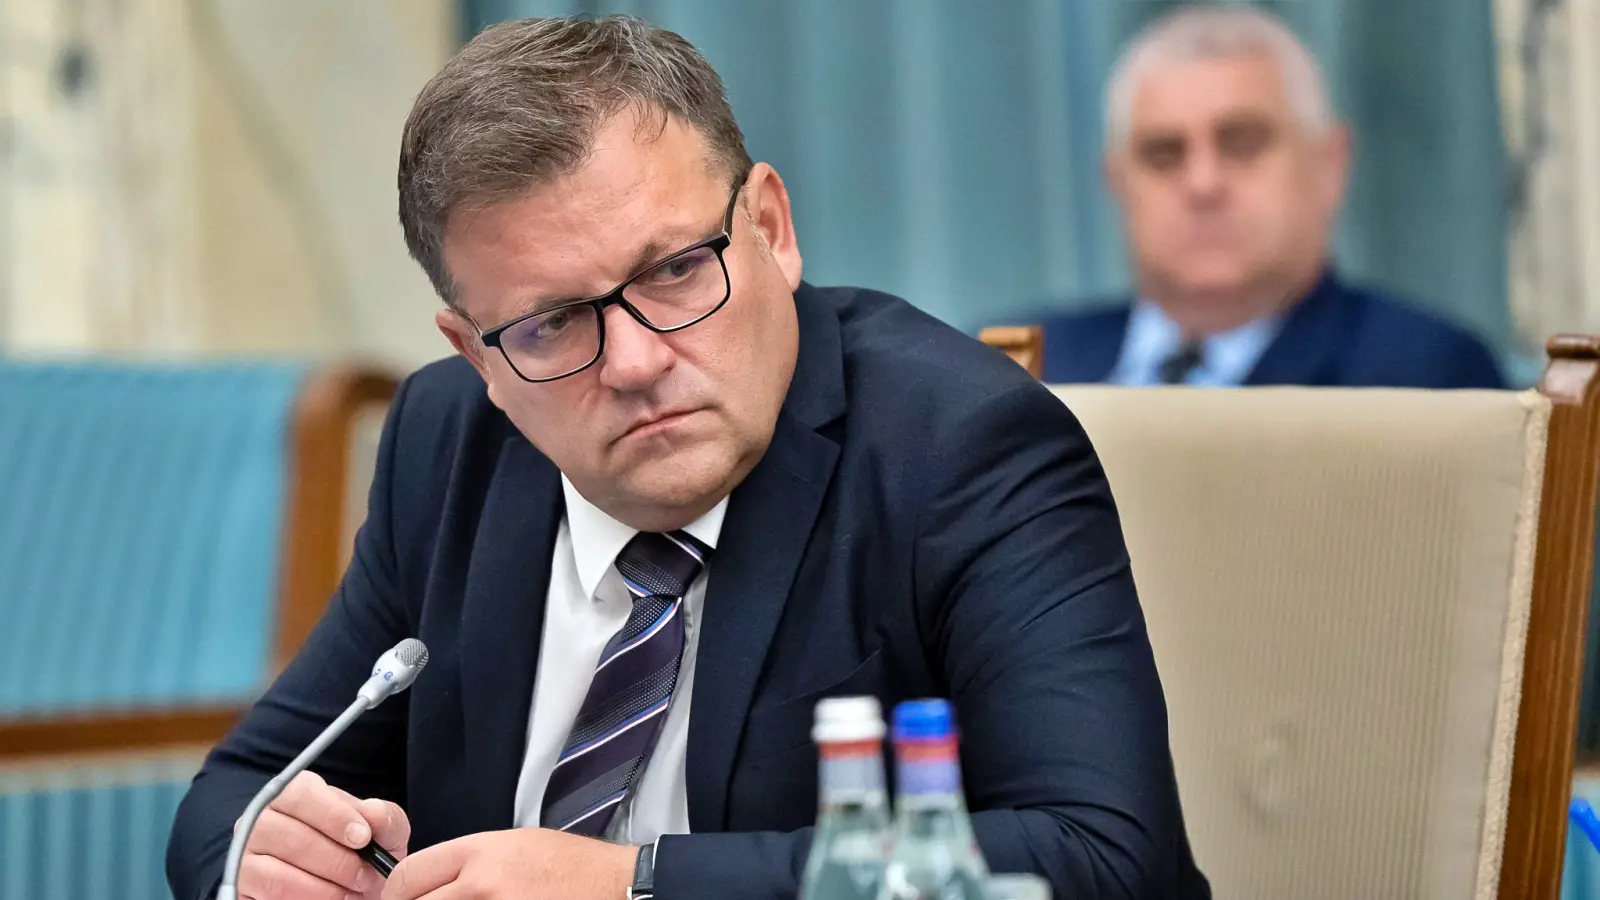 OSTATNI RAZ Minister Pracy Podwyżka emerytur Oficjalny komunikat Rumunów